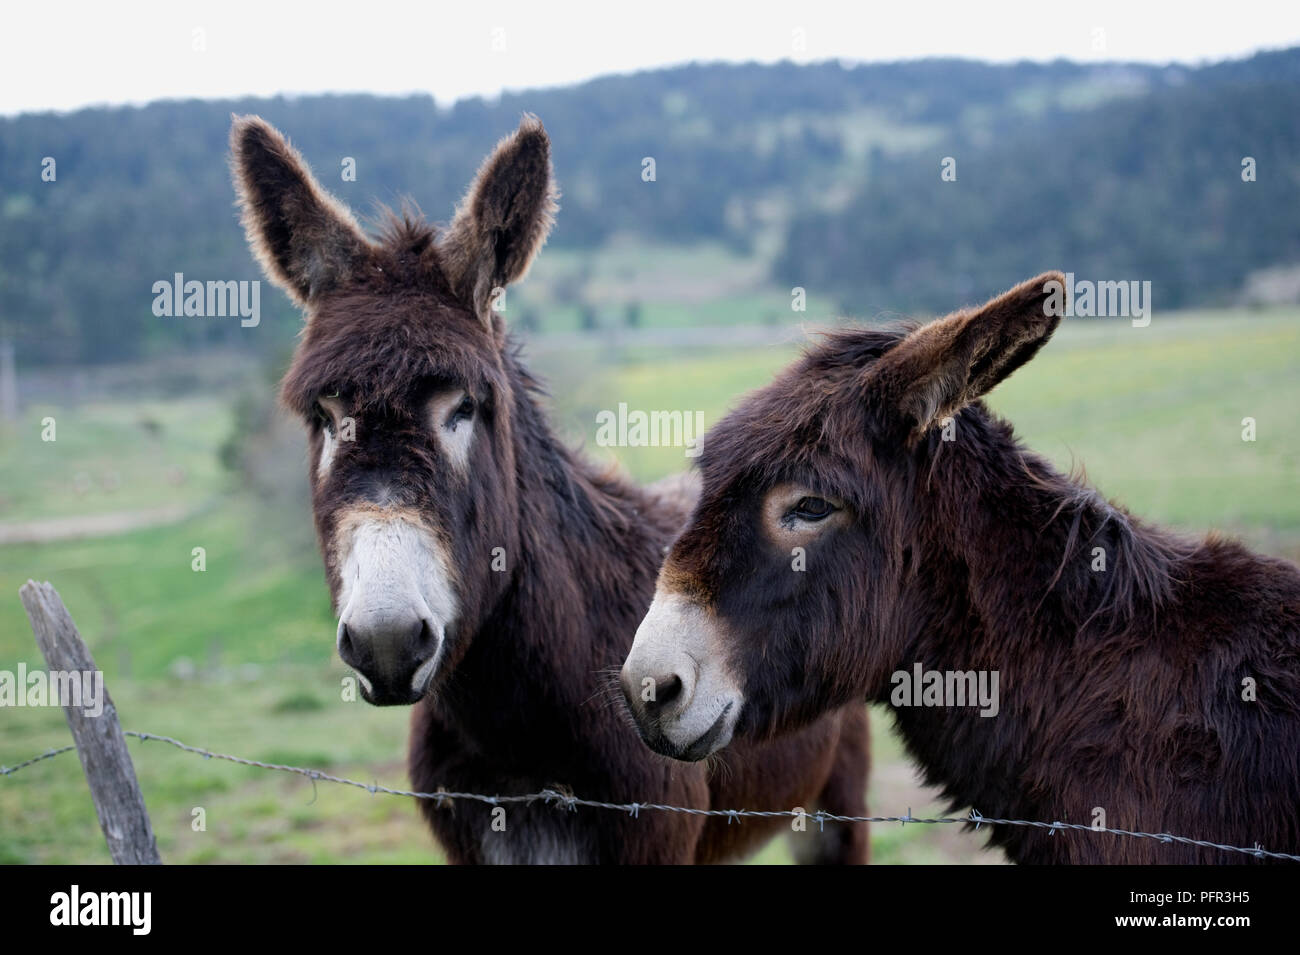 Francia, Marsanne villaggio, due asini marrone in piedi vicino al recinto di filo spinato nel campo, close-up Foto Stock